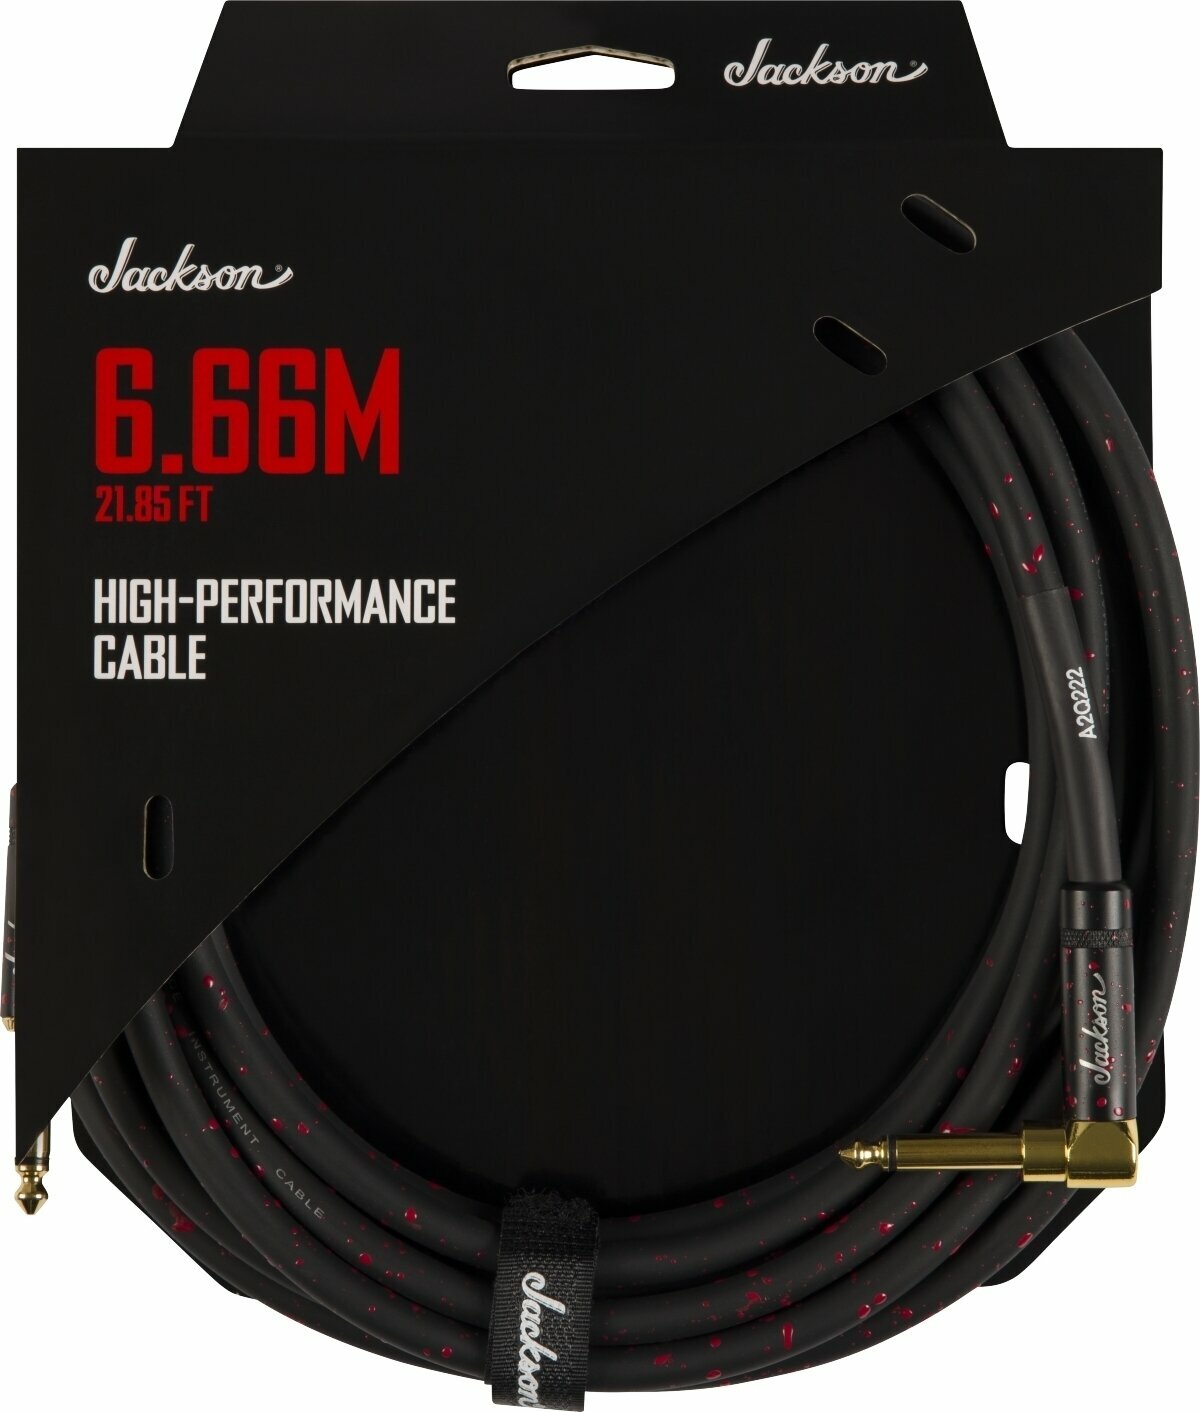 Cabo do instrumento Jackson High Performance Cable Preto-Vermelho 6,66 m Reto - Angular